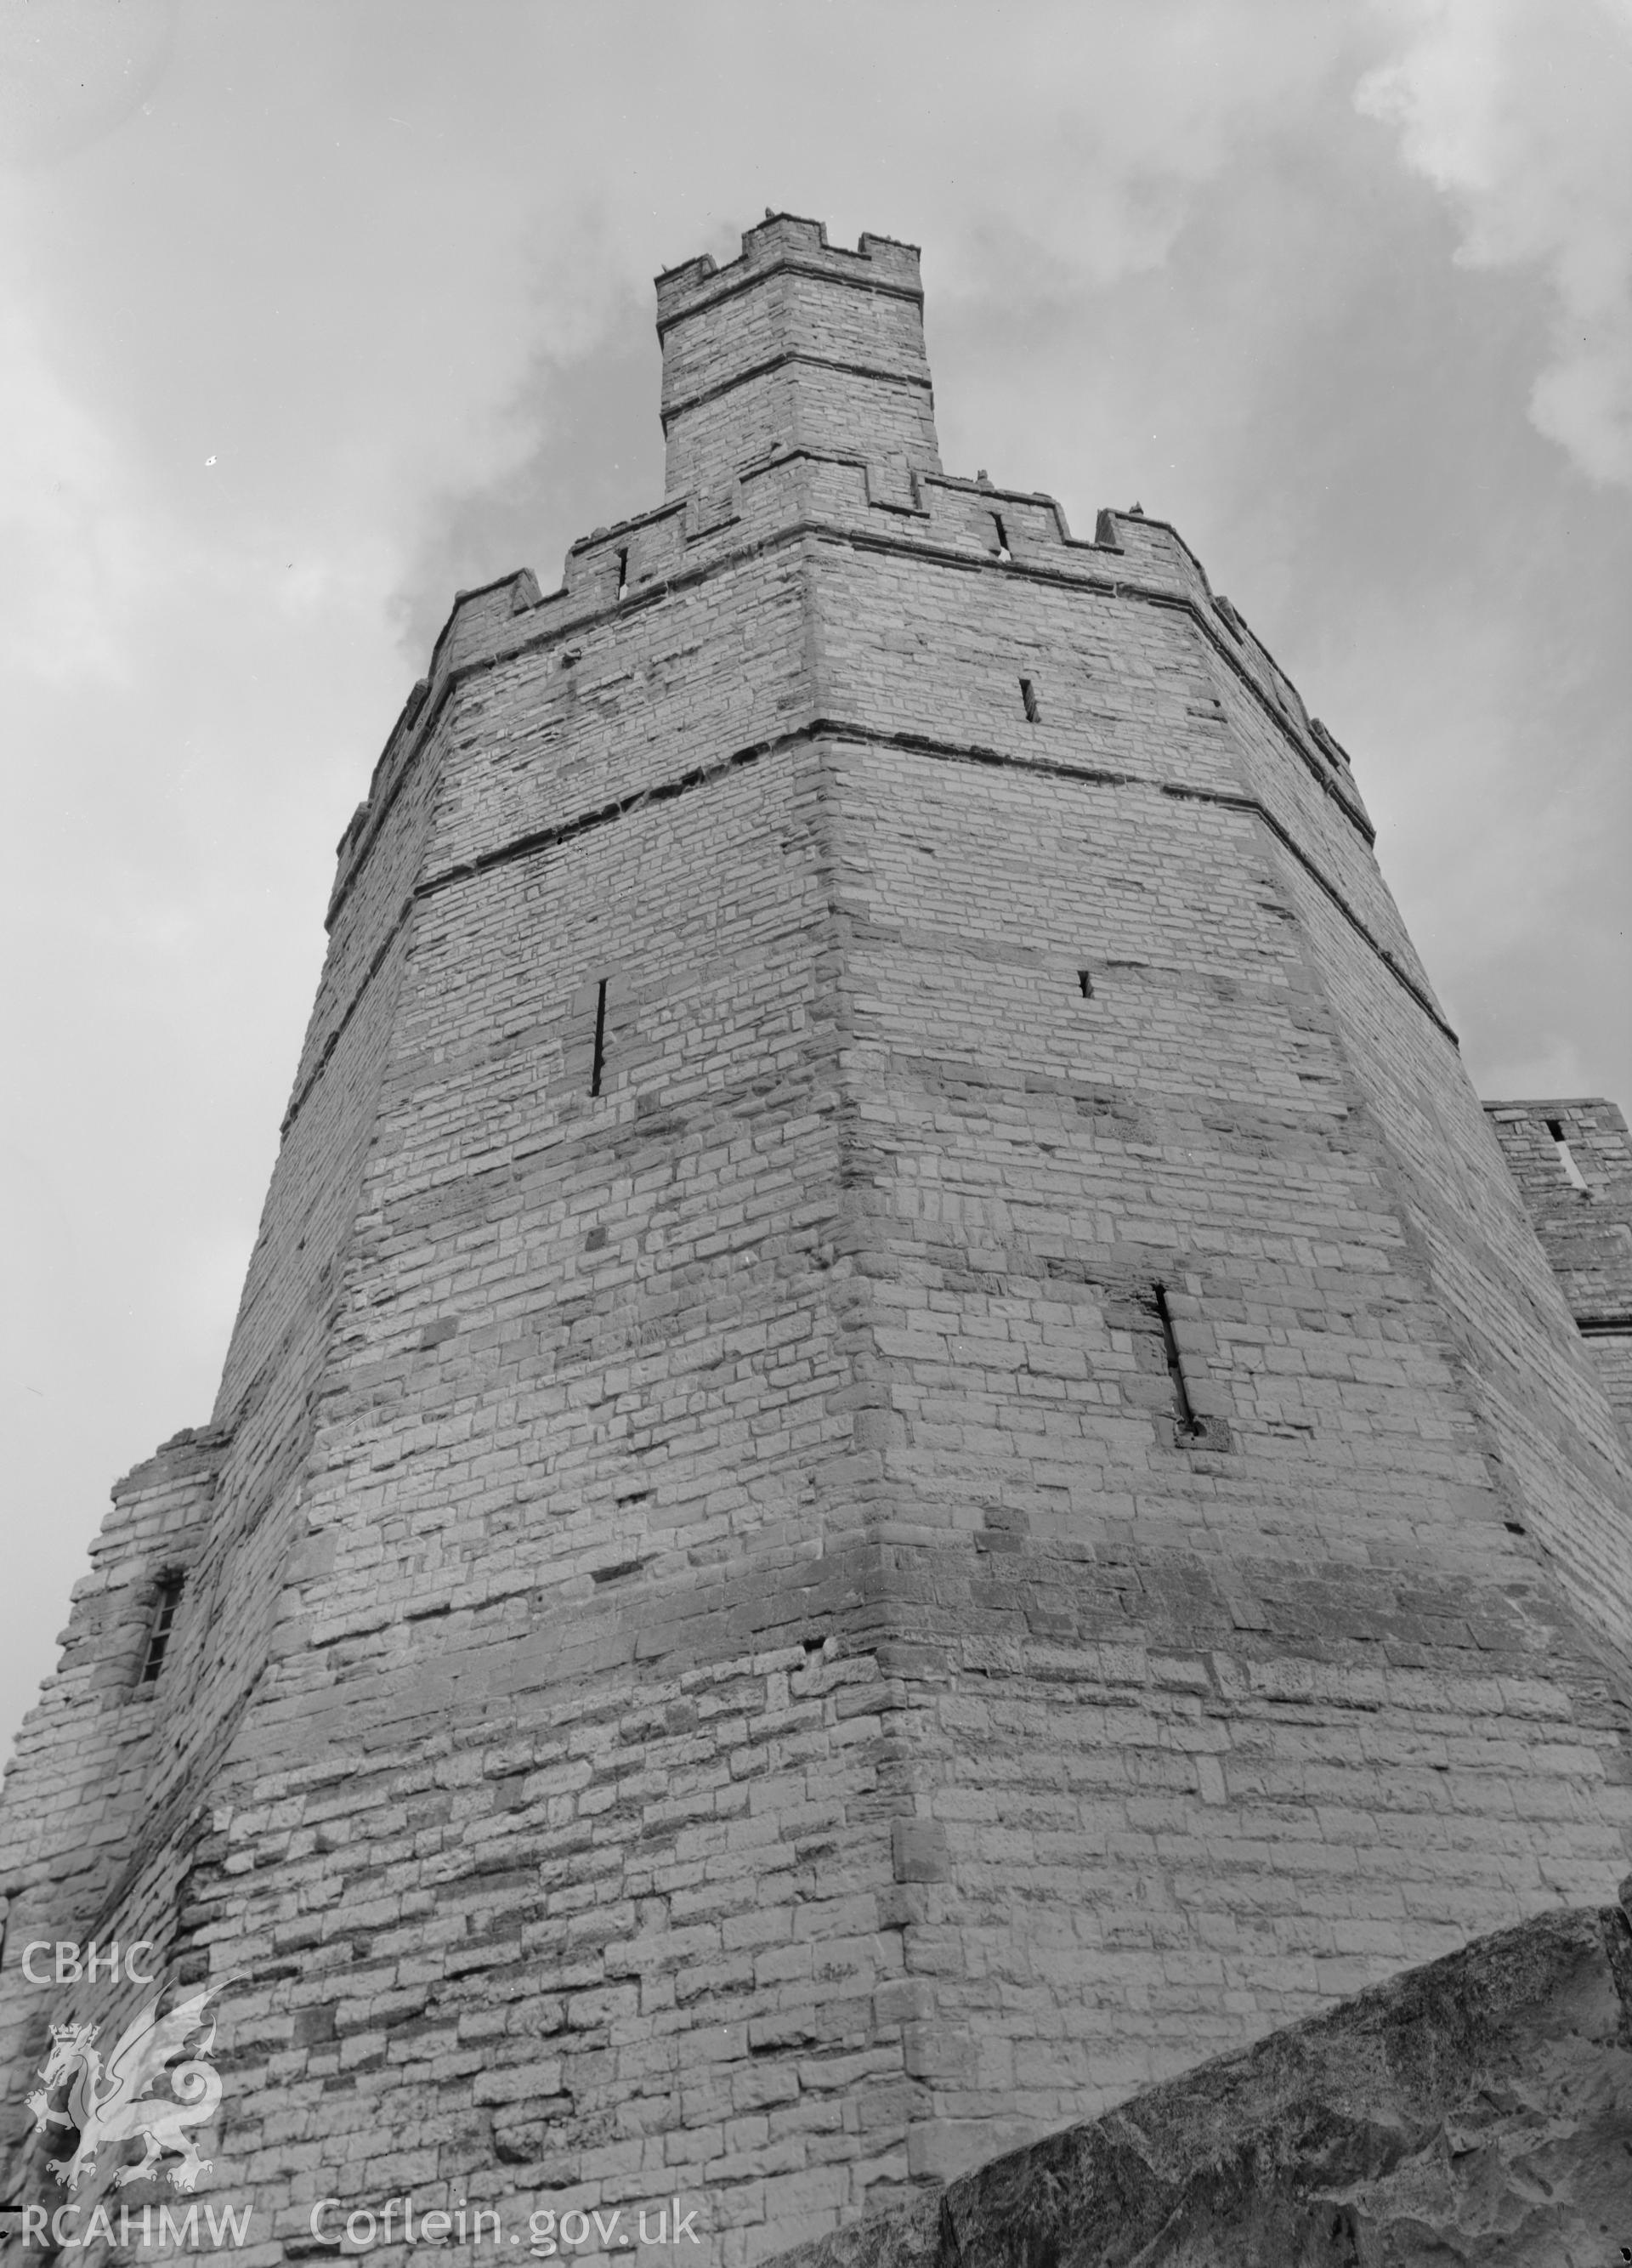 D.O.E photograph of Caernarfon Castle - Eagle Tower, strength and symmetry.